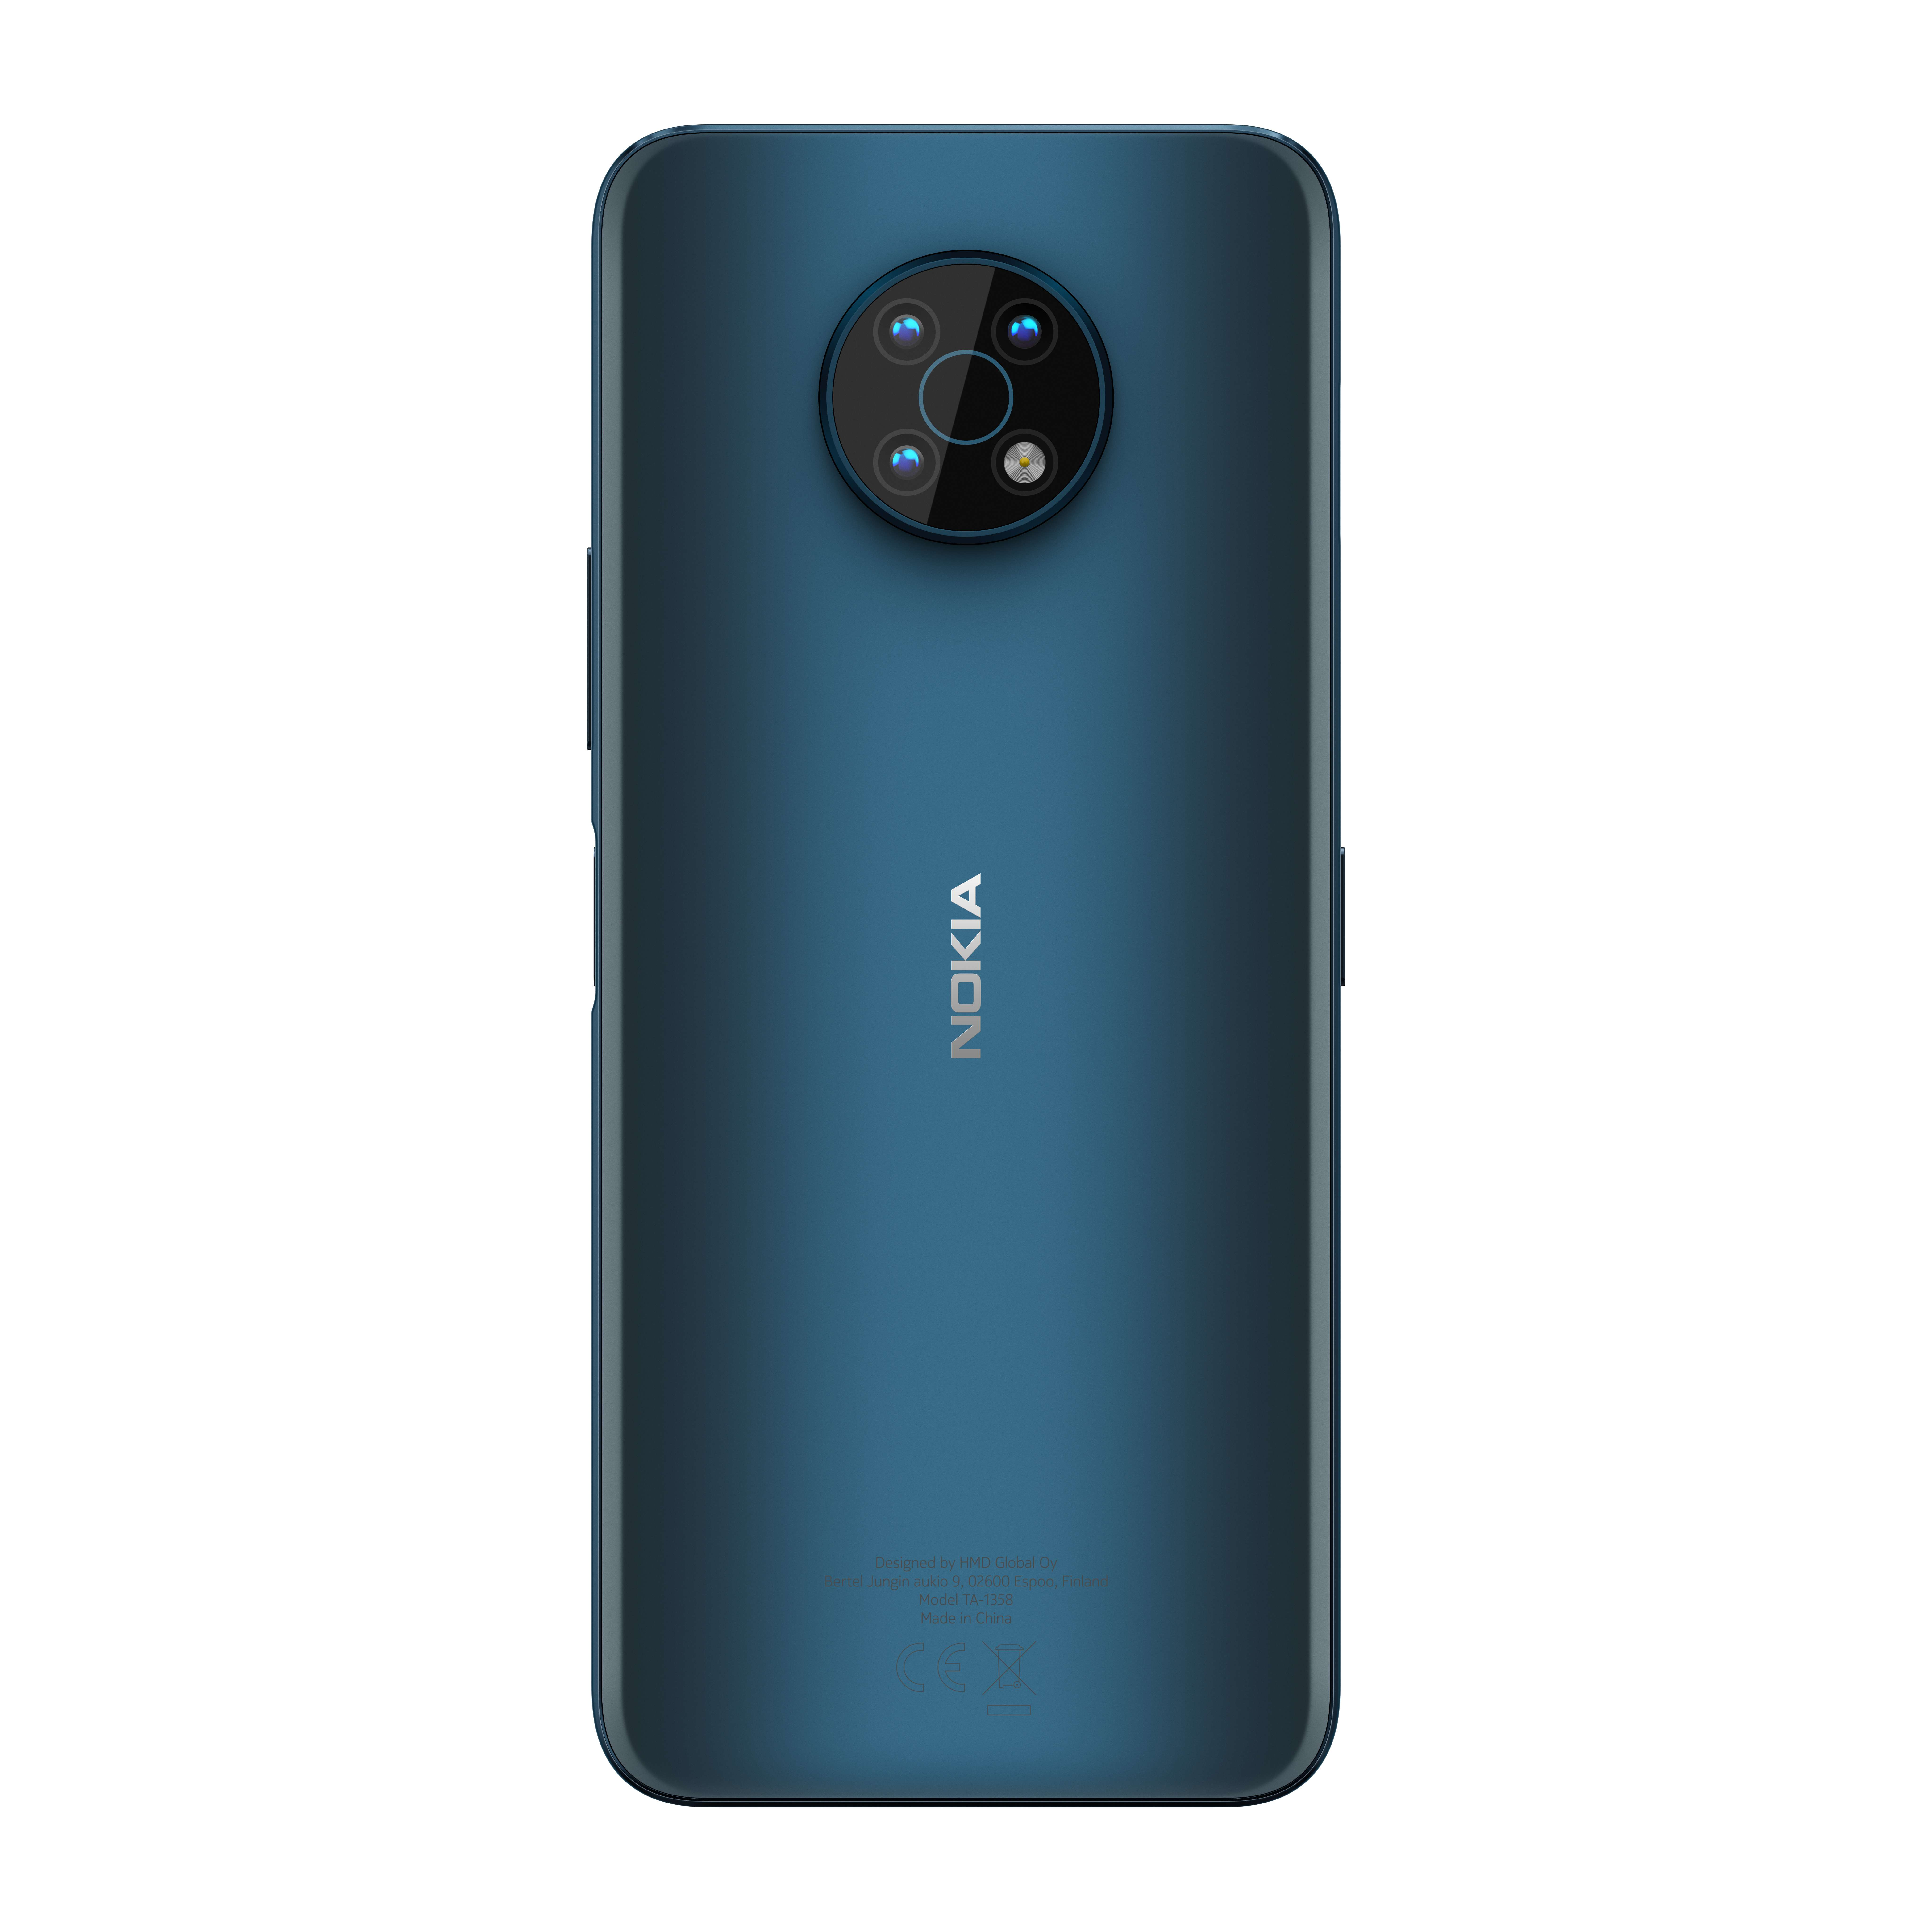 HMD Mobile Việt Nam chính thức ra mắt G-series tại Việt Nam, hoàn thiện dải sản phẩm 2021 với Nokia G50 và Nokia G10 hướng đến người dùng phân khúc tầm trung.